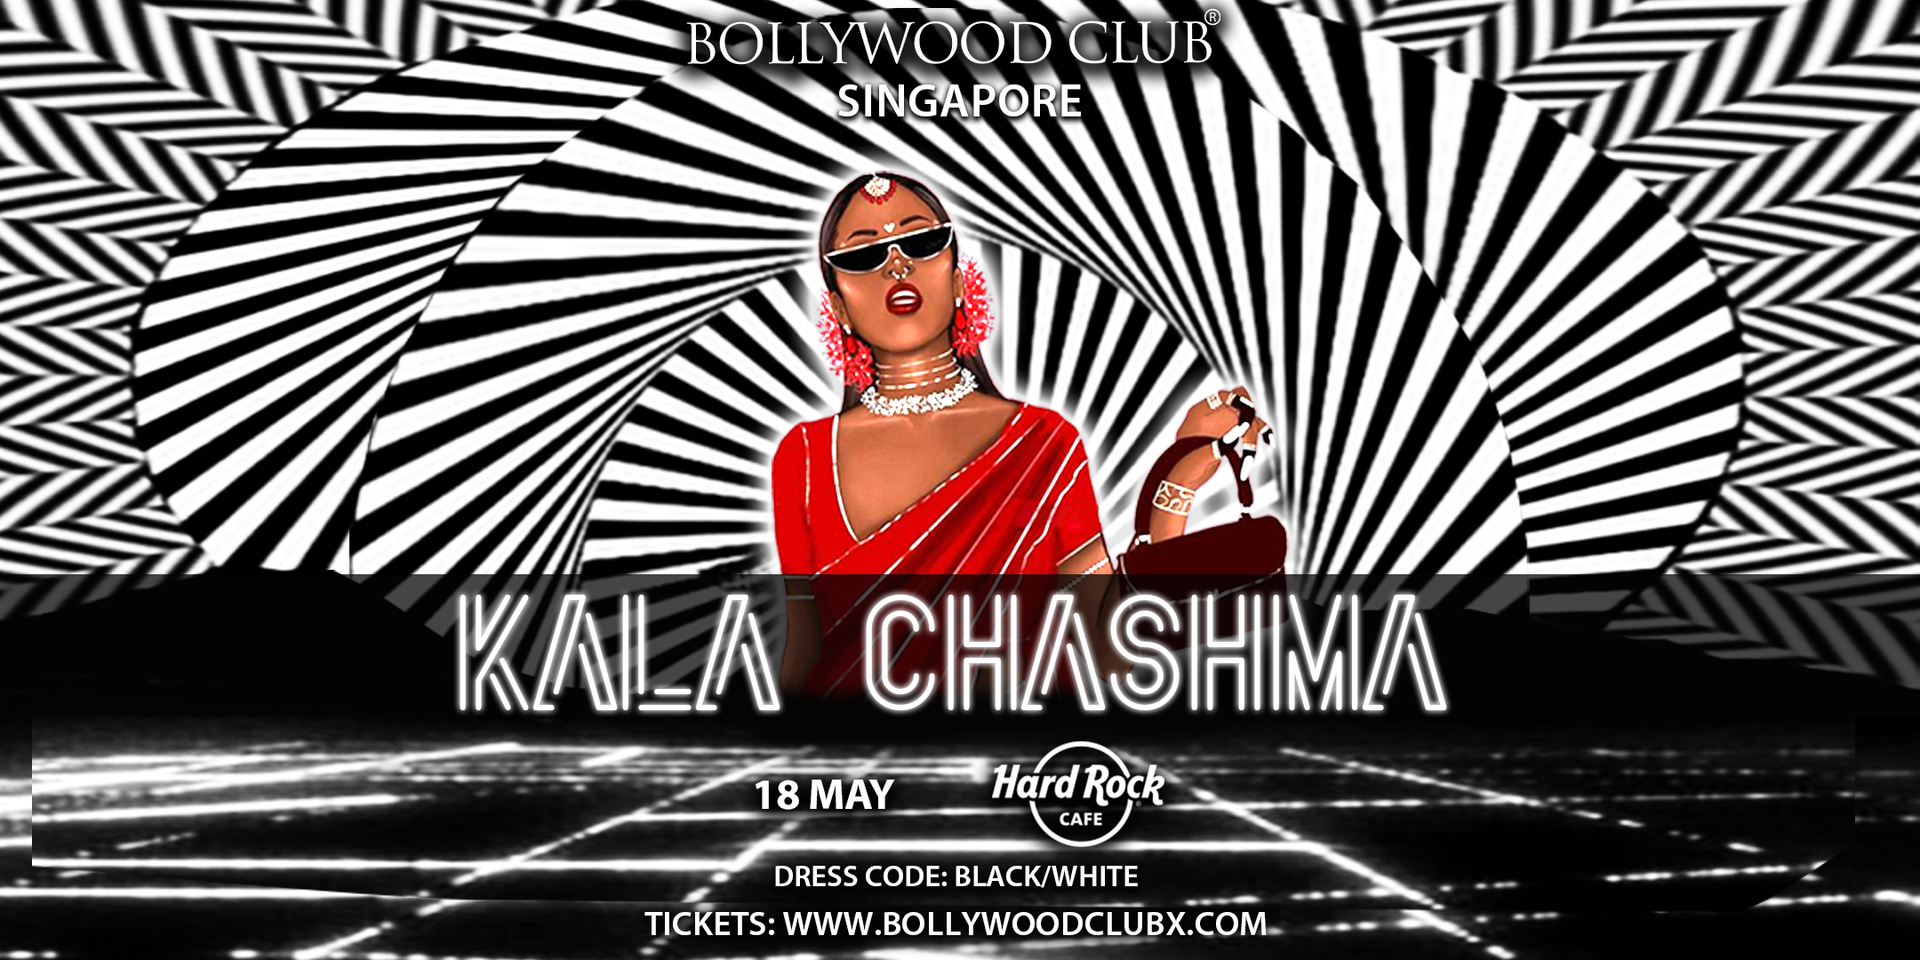 Bollywood Club KALA CHASHMA at Hard Rock Cafe, Singapore, Singapore